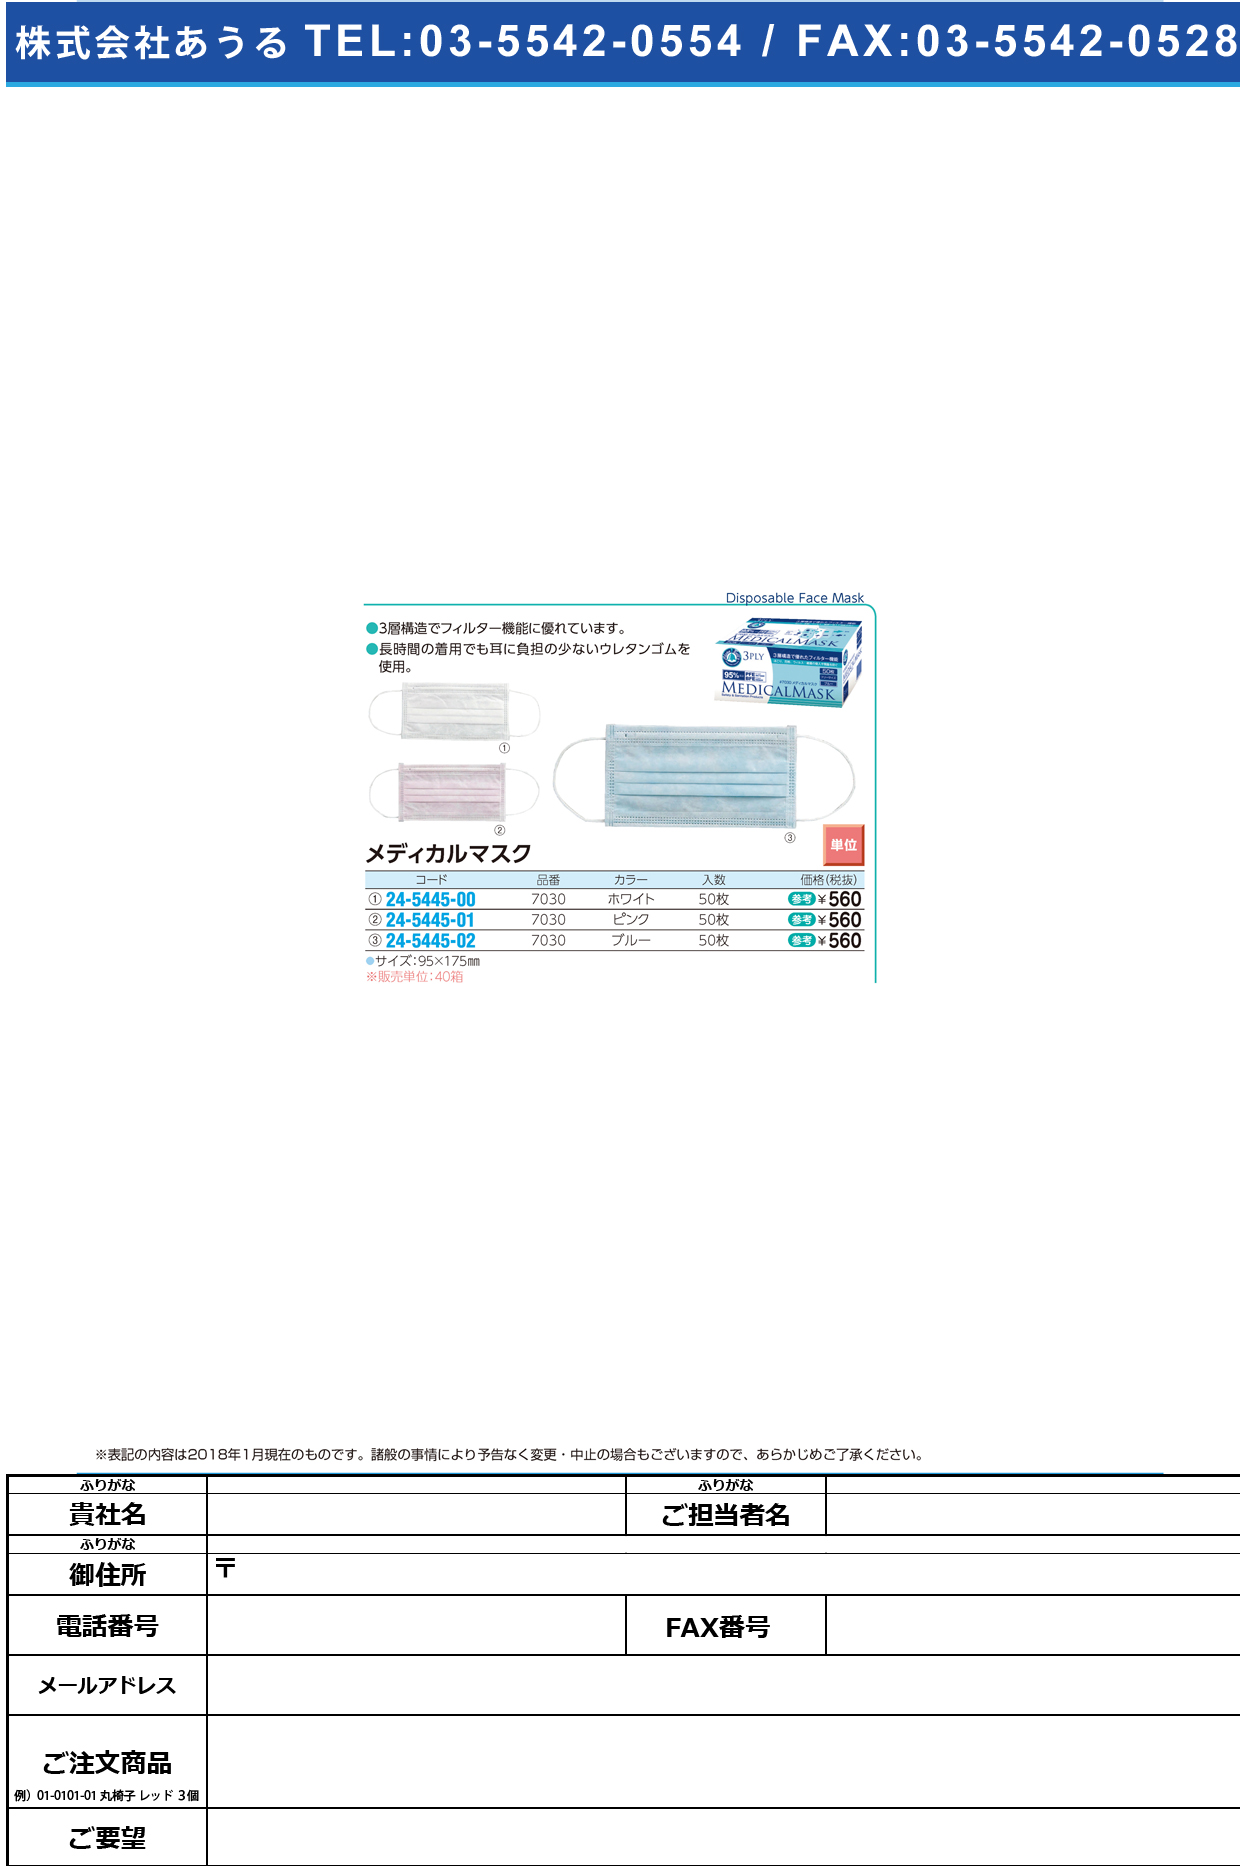 (24-5445-01)メディカルマスク 7030(ﾋﾟﾝｸ)50ﾏｲｲﾘ ﾒﾃﾞｨｶﾙﾏｽｸ【40箱単位】【2018年カタログ商品】